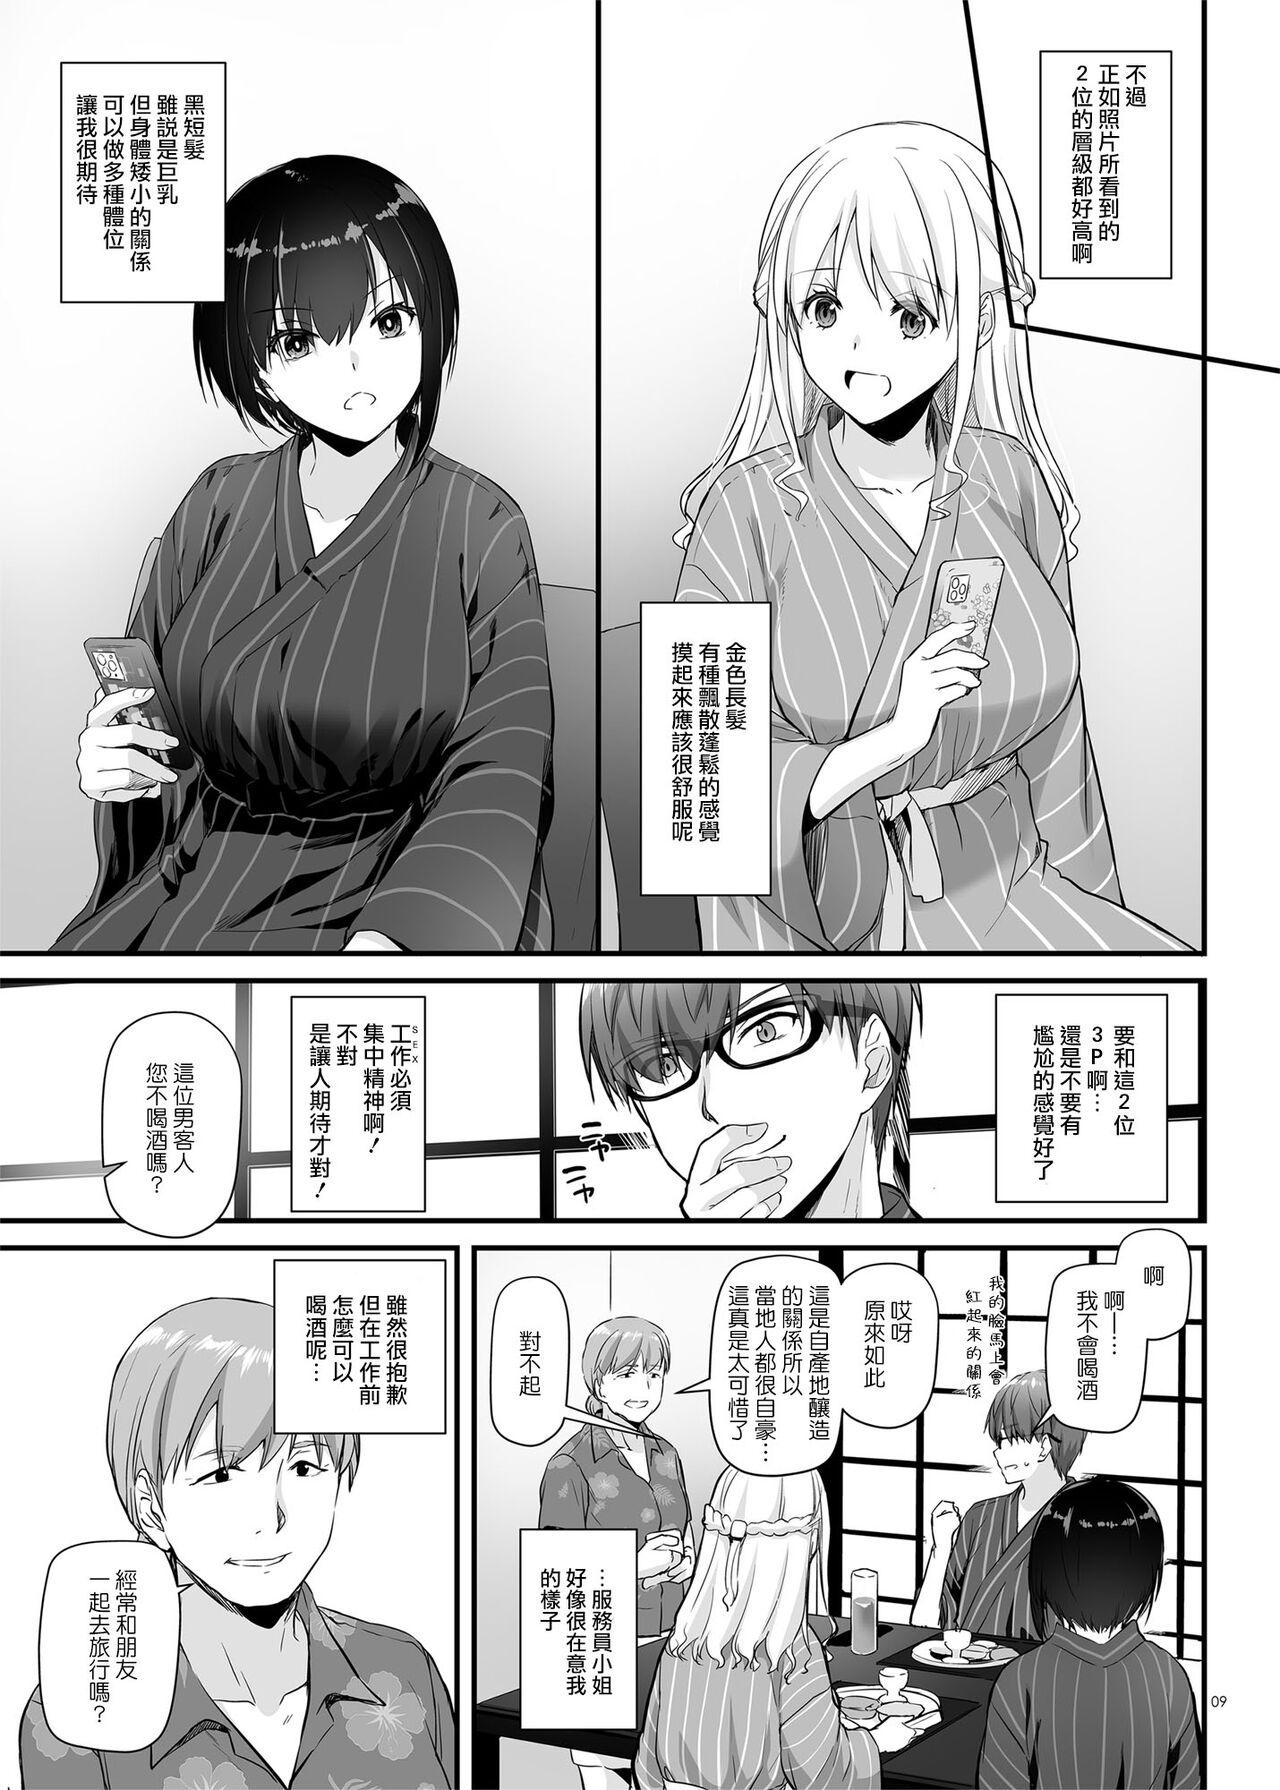 Retro Haramaseya 3 DLO-22 - Original Realitykings - Page 9